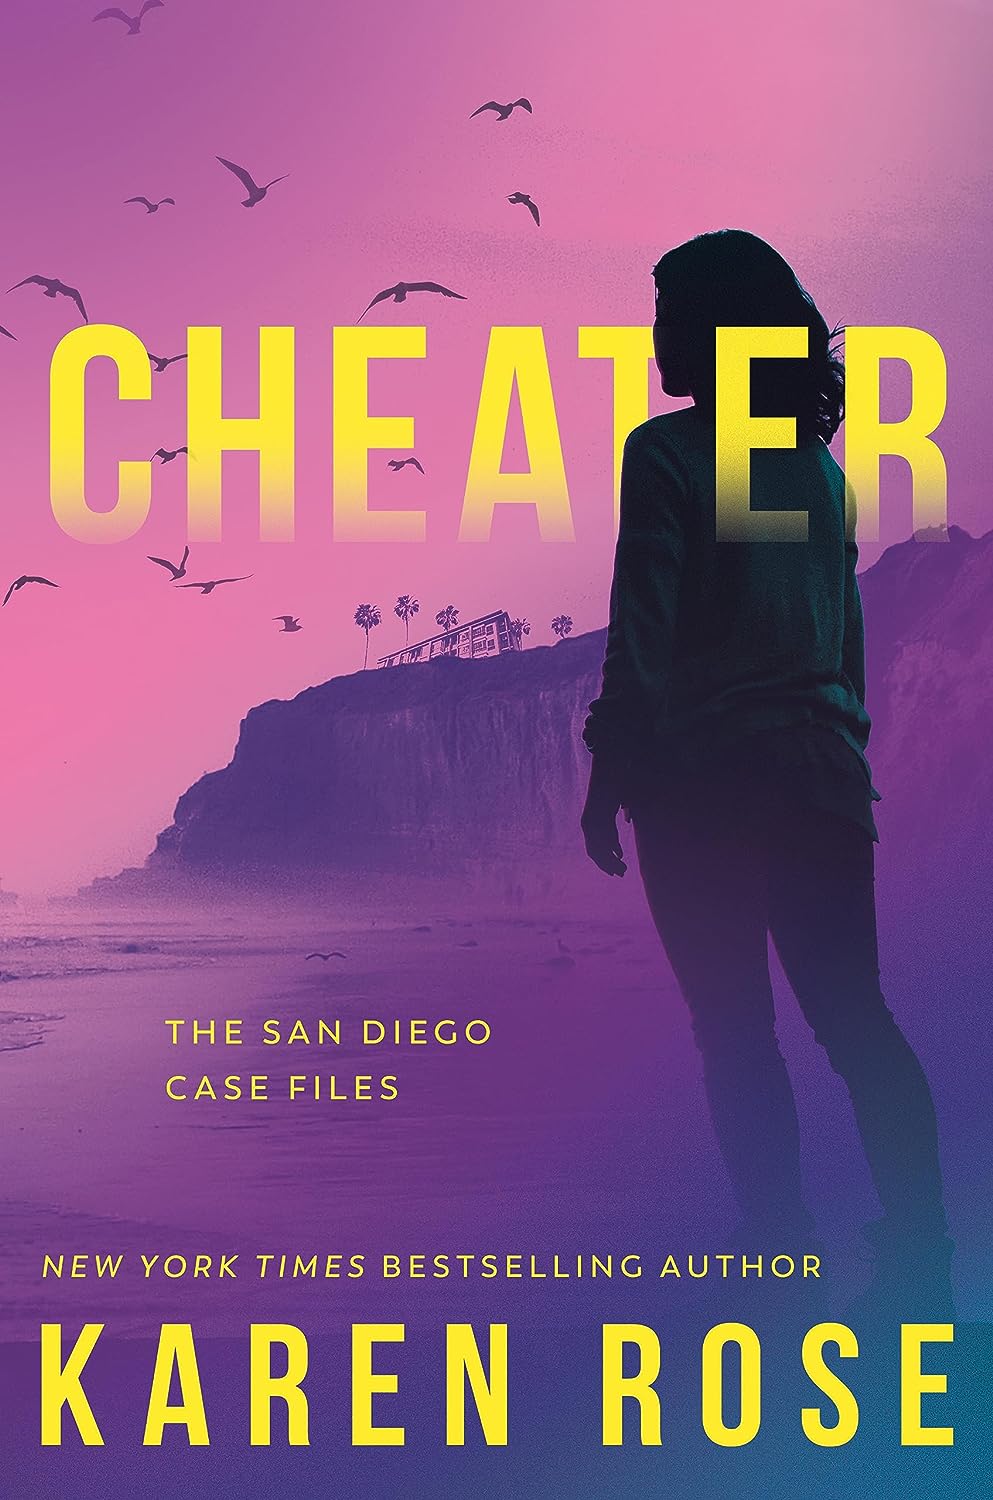 Cheater by Karen Rose